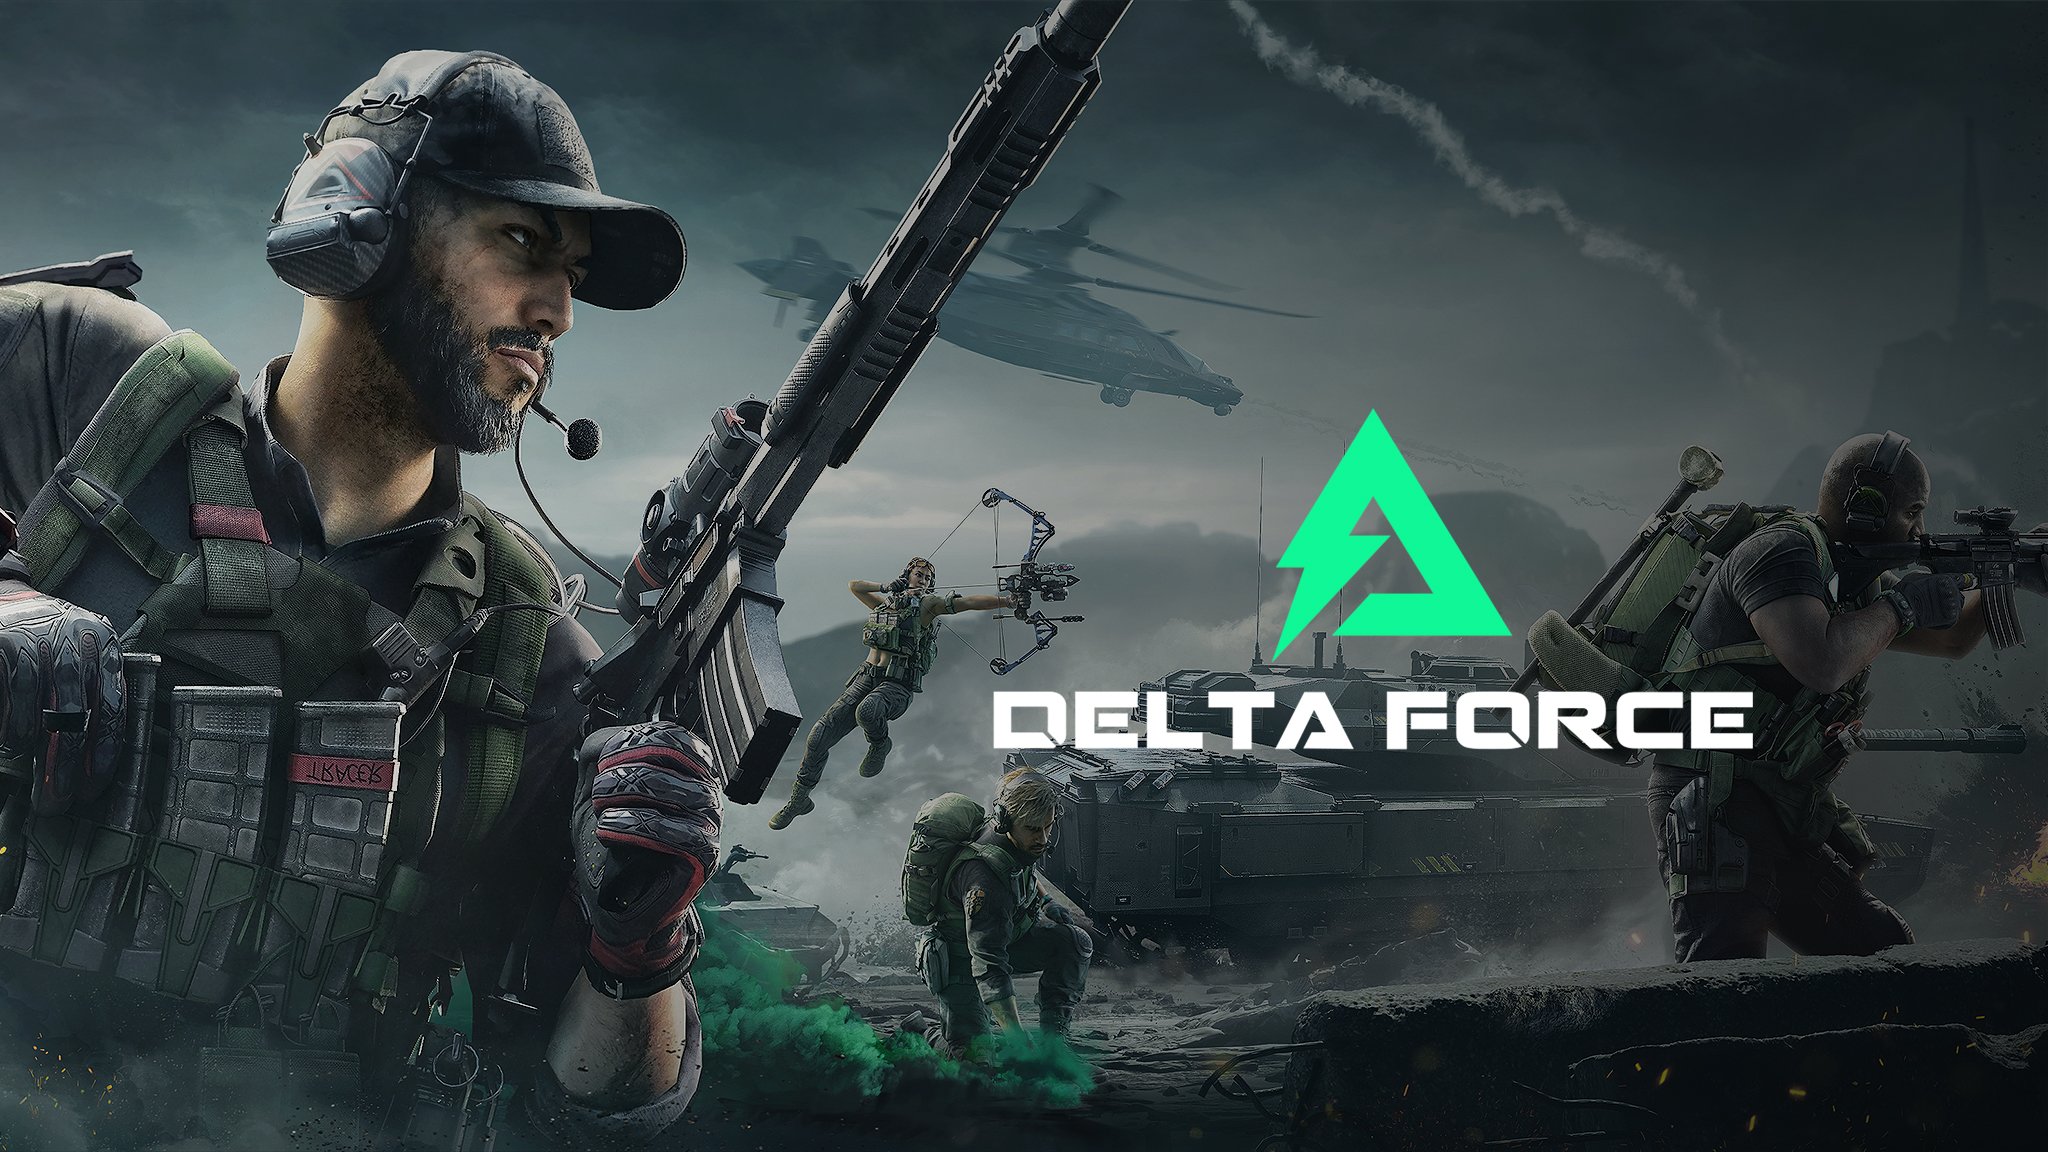 El anuncio completo de Delta Force: Hawk Ops. El juego estará disponible en Xbox, PlayStation, PC y dispositivos móviles.